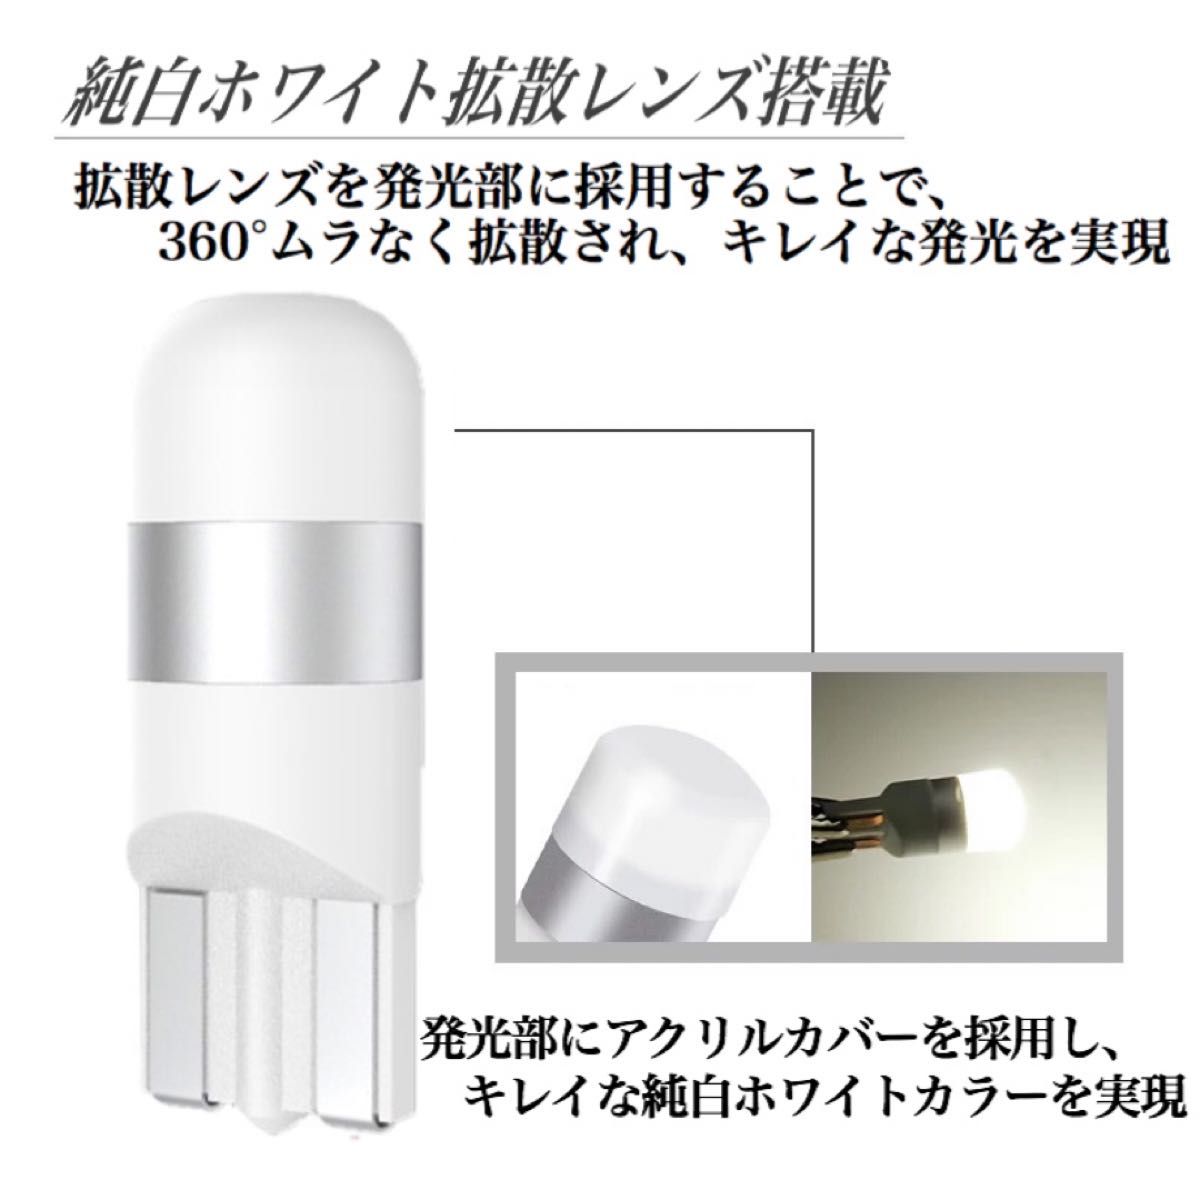 【アウトレット特価品】純白 T10 LED バルブ 拡散レンズ 上品 6000K ホワイト ウェッジ球 10個入 ポジション球